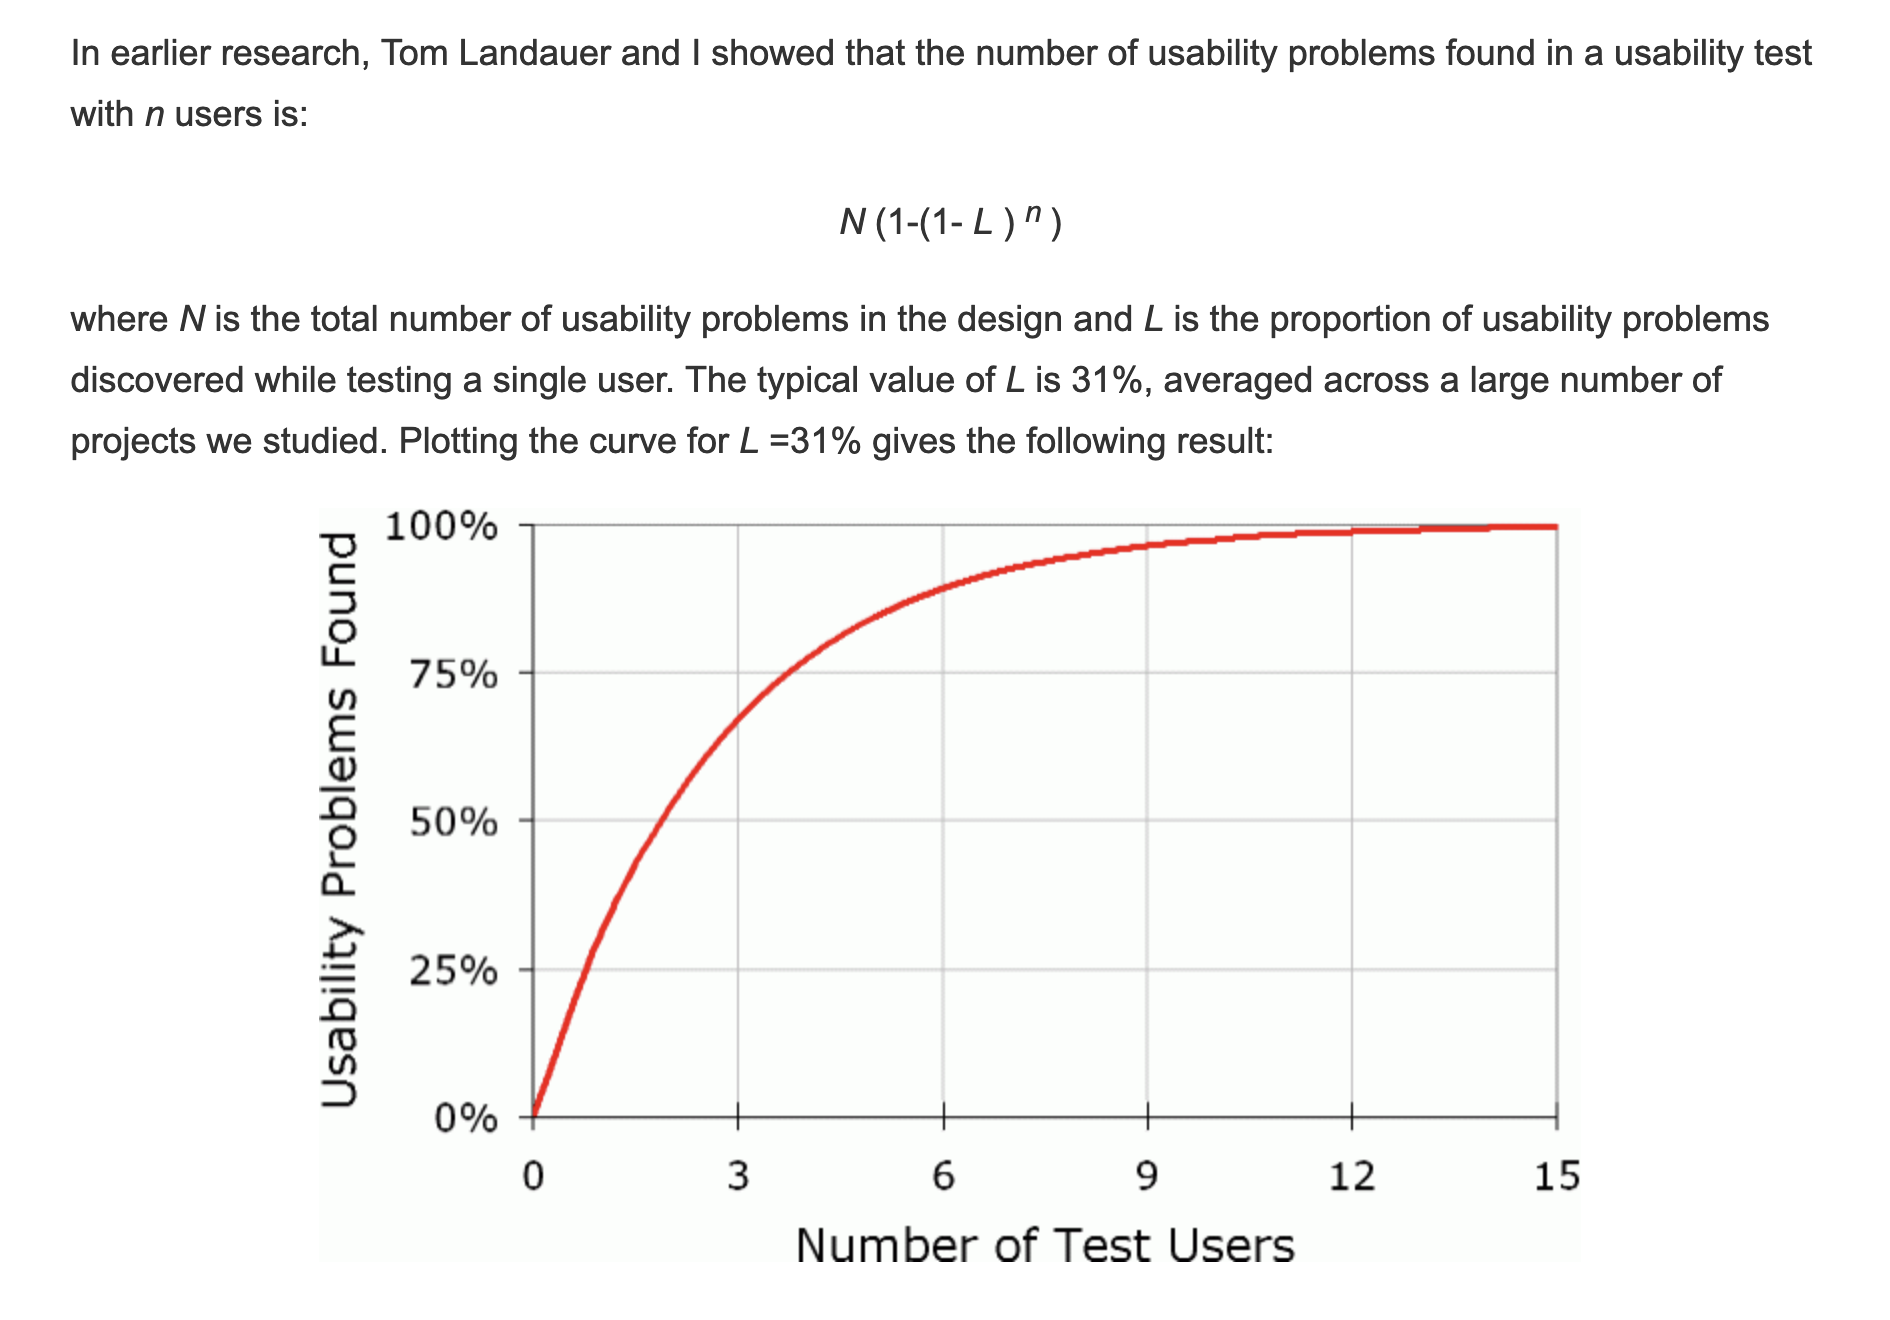 닐슨노먼스룹의 <Why You Only Need to Test with 5 Users>에 따르면 5명의 사용자를 대상으로 사용성 테스트를 하면 일어날 수 있는 문제의 약 85%를 확인할 수 있습니다 ©NNG